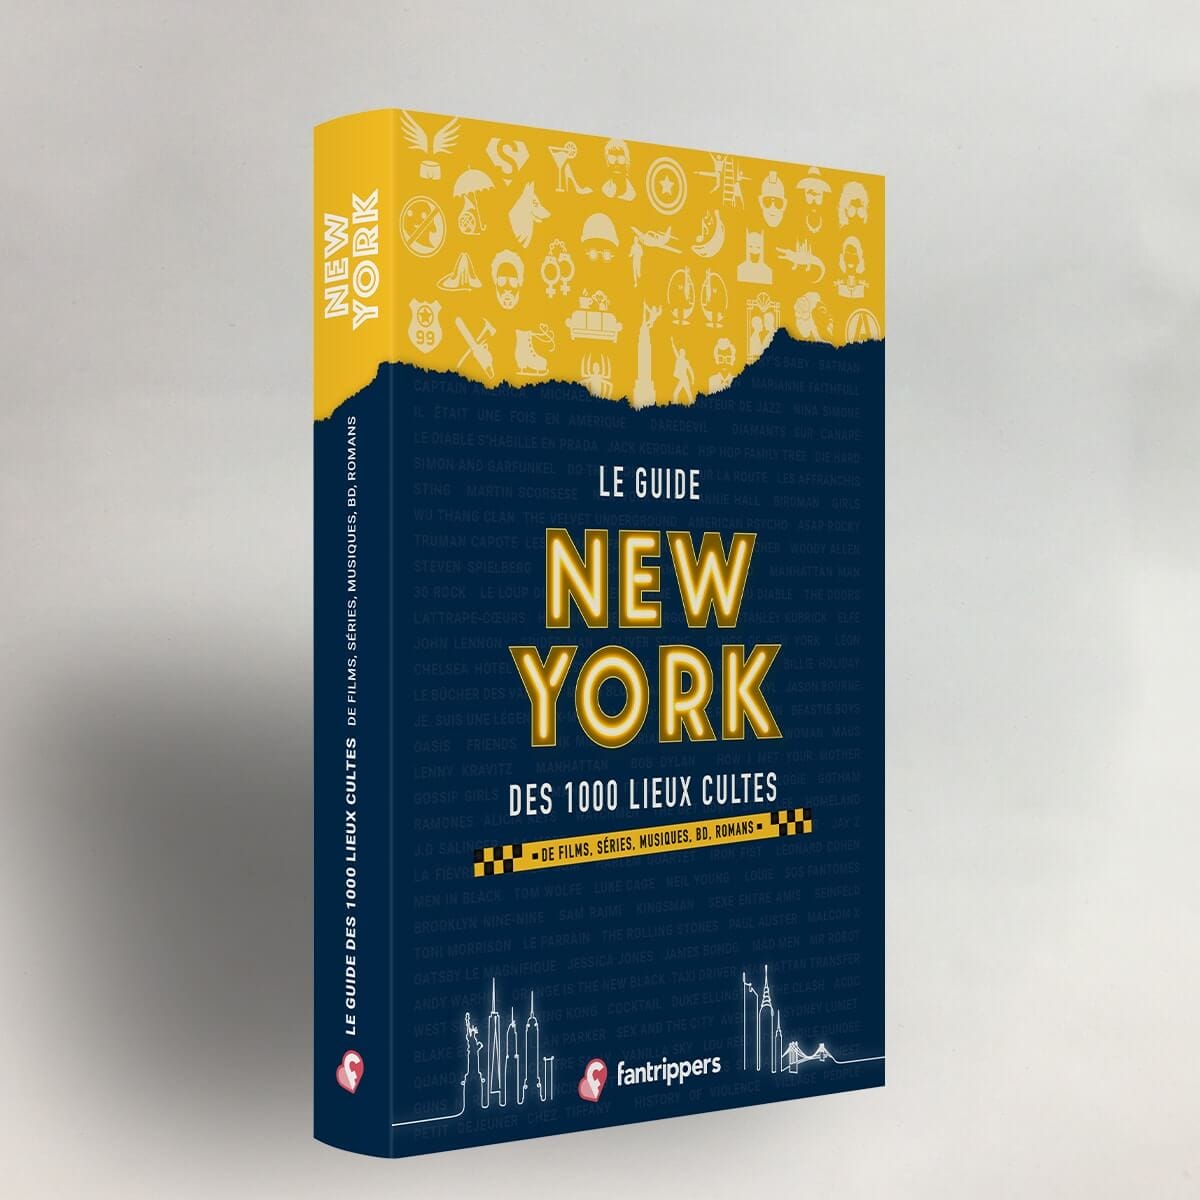 Le guide New York des 100 lieux cultes de films, séries, musiques, bd et romans 2019